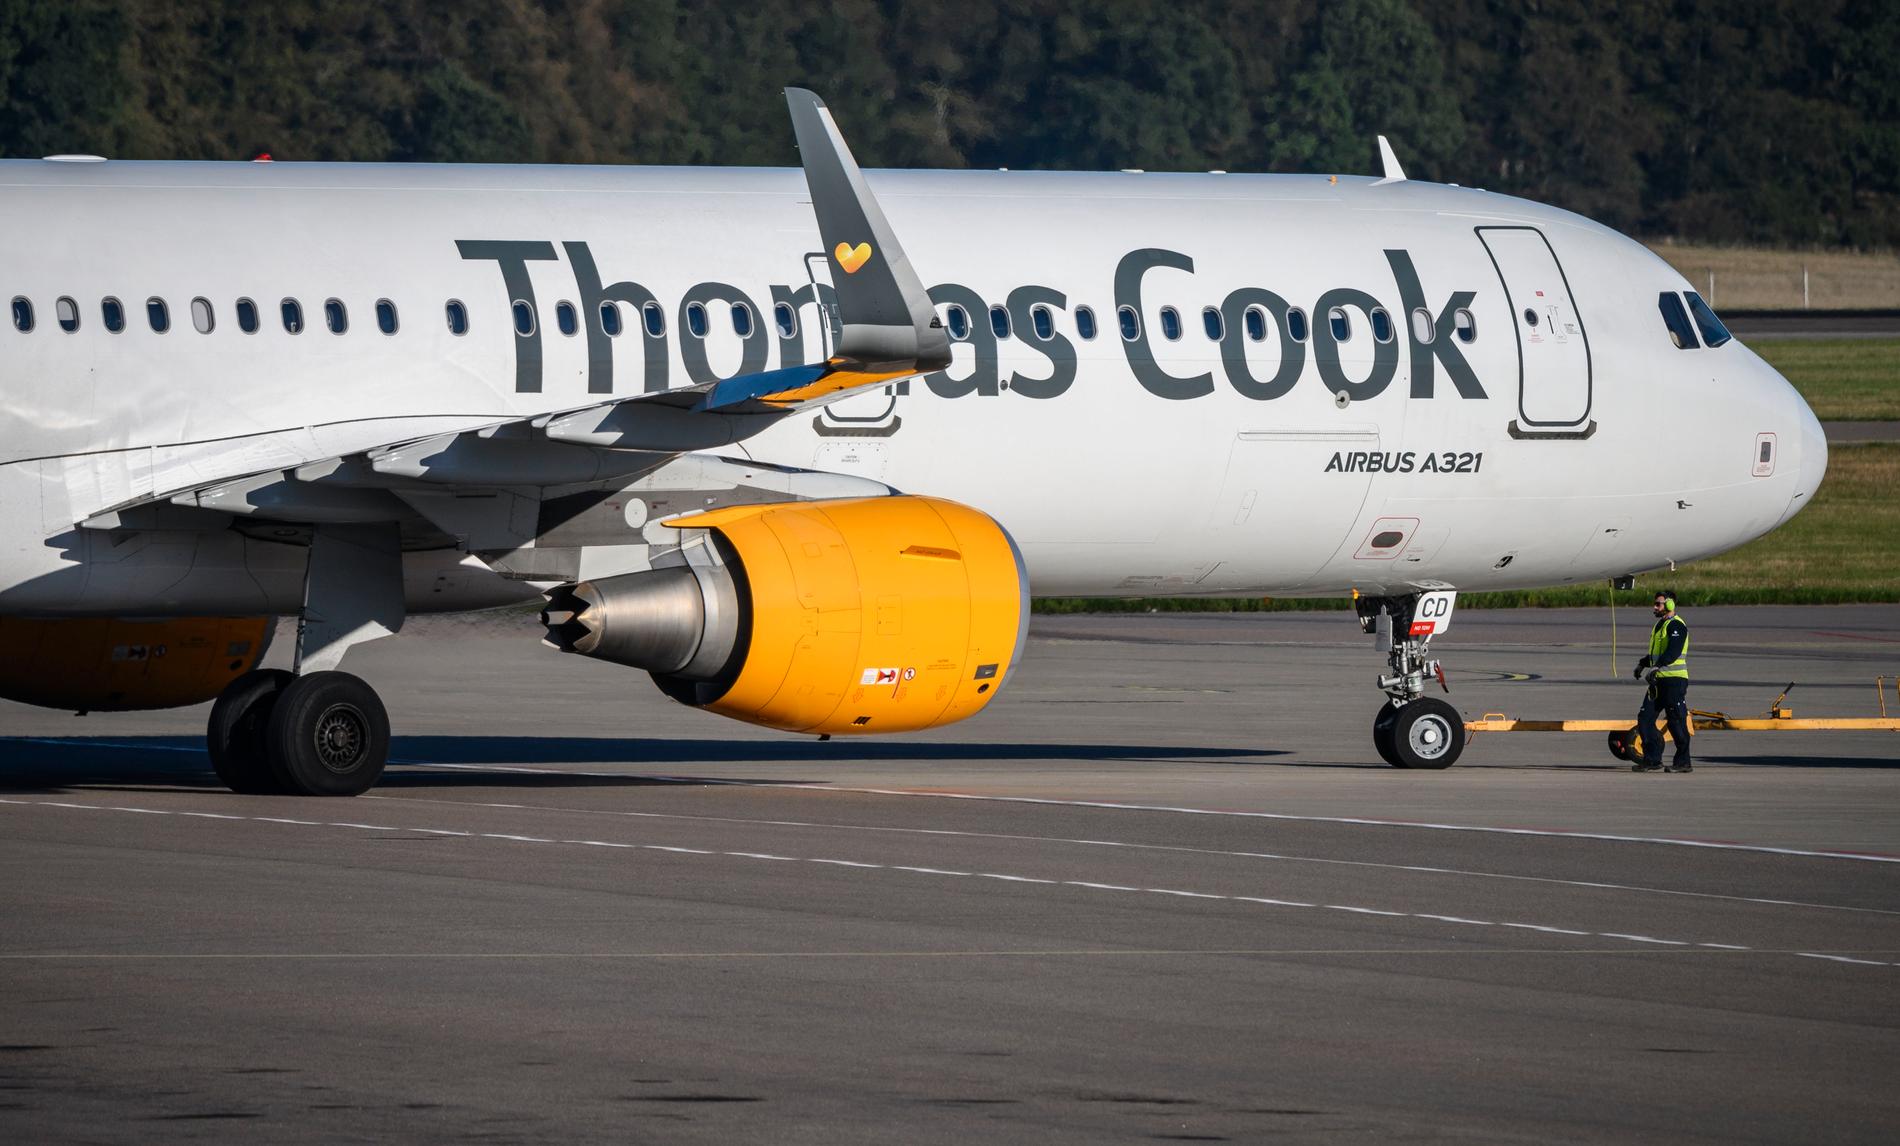 Resebolaget Thomas Cook, som bland annat flyger från  Malmö Airport/Sturup och Kastrup i Köpenhamn har blivit försatt i konkurs. 